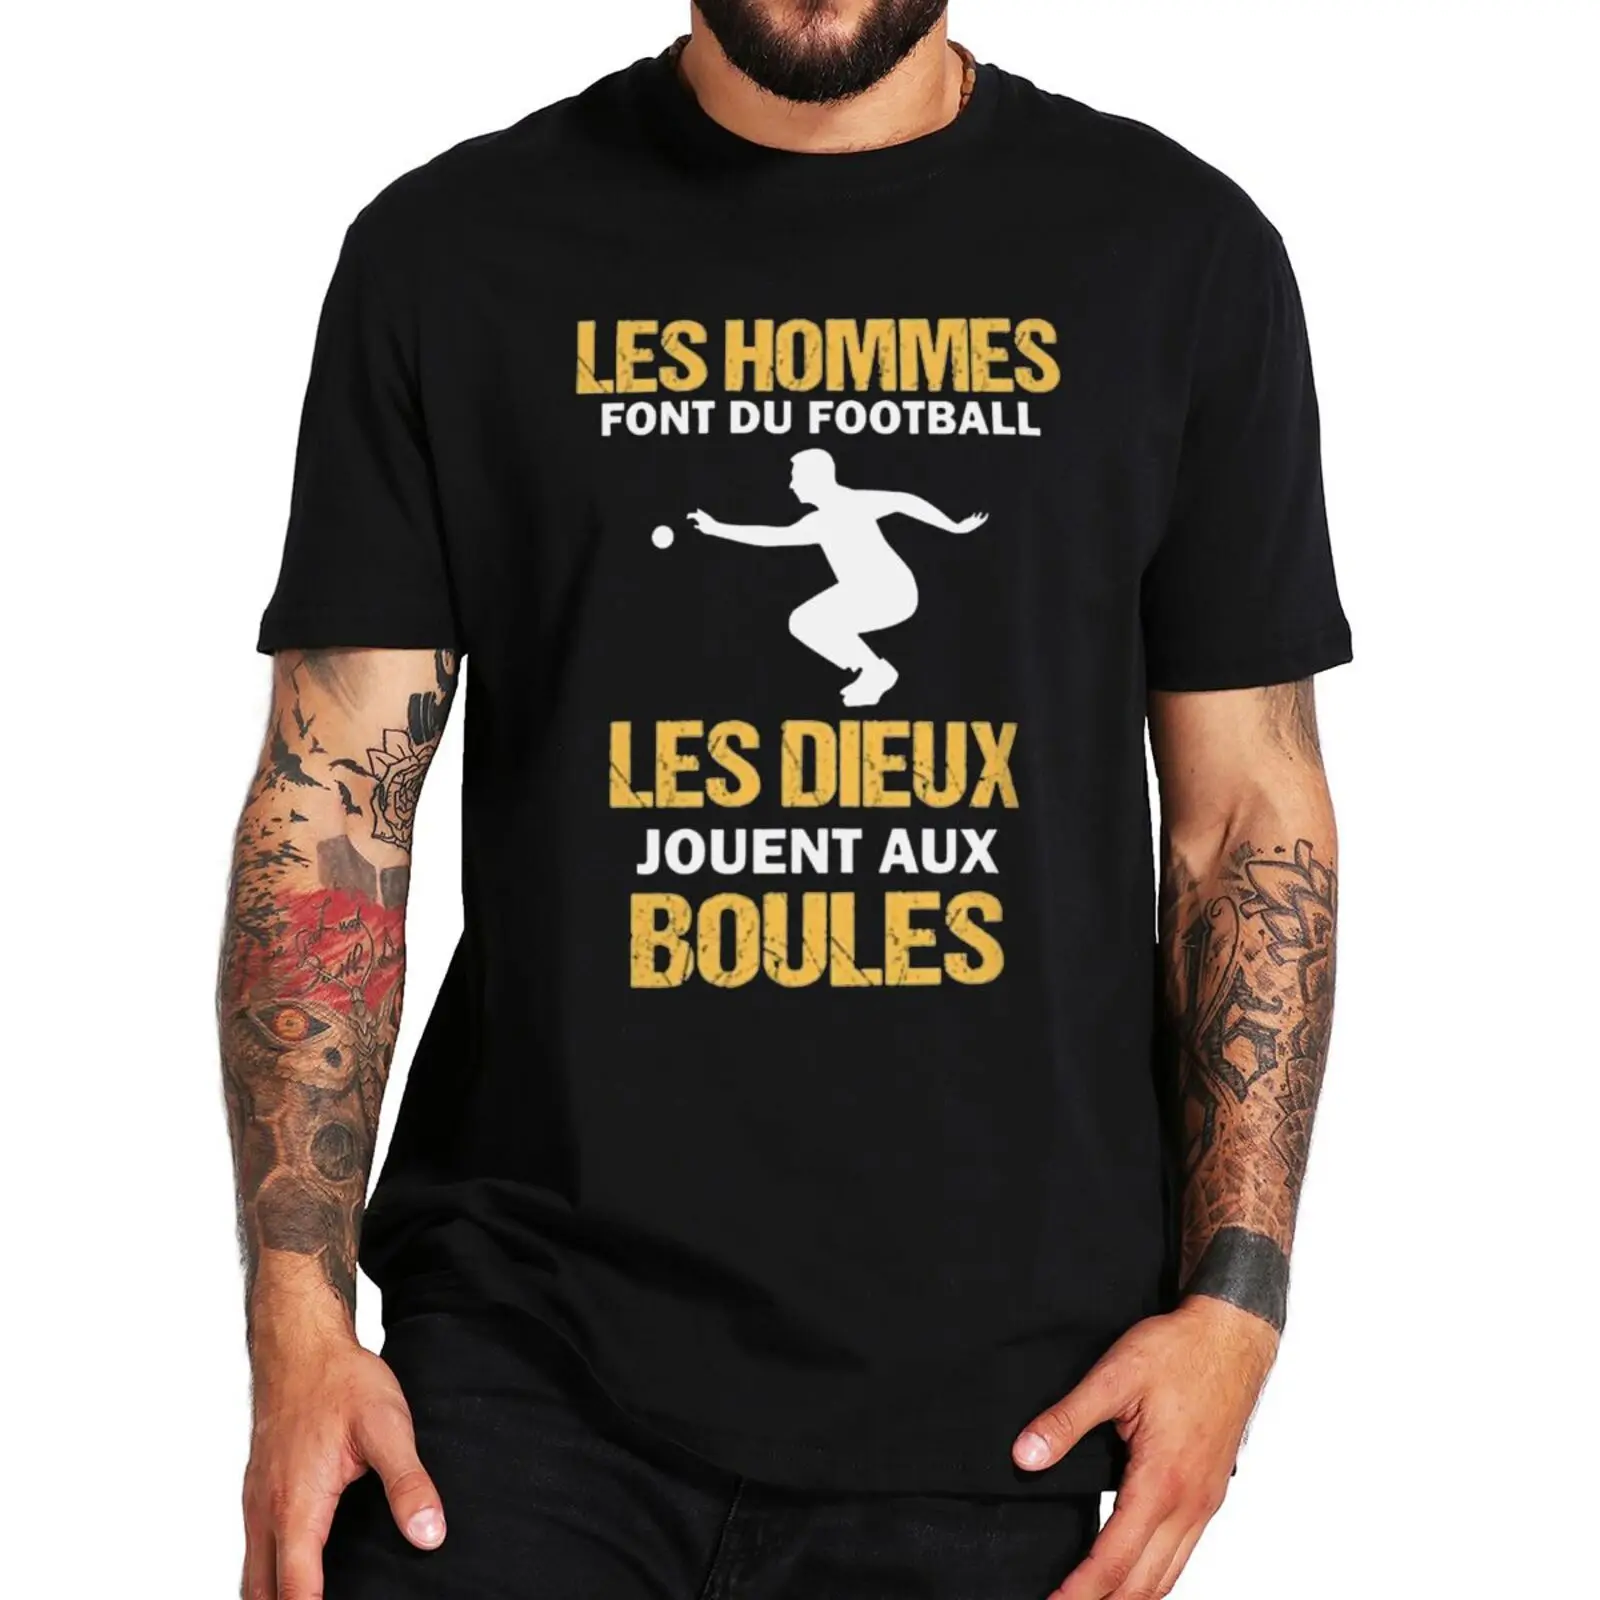 

Забавная футболка для игры в шары Петанк, мужская спортивная футболка с короткими рукавами, 100% хлопок, европейские размеры